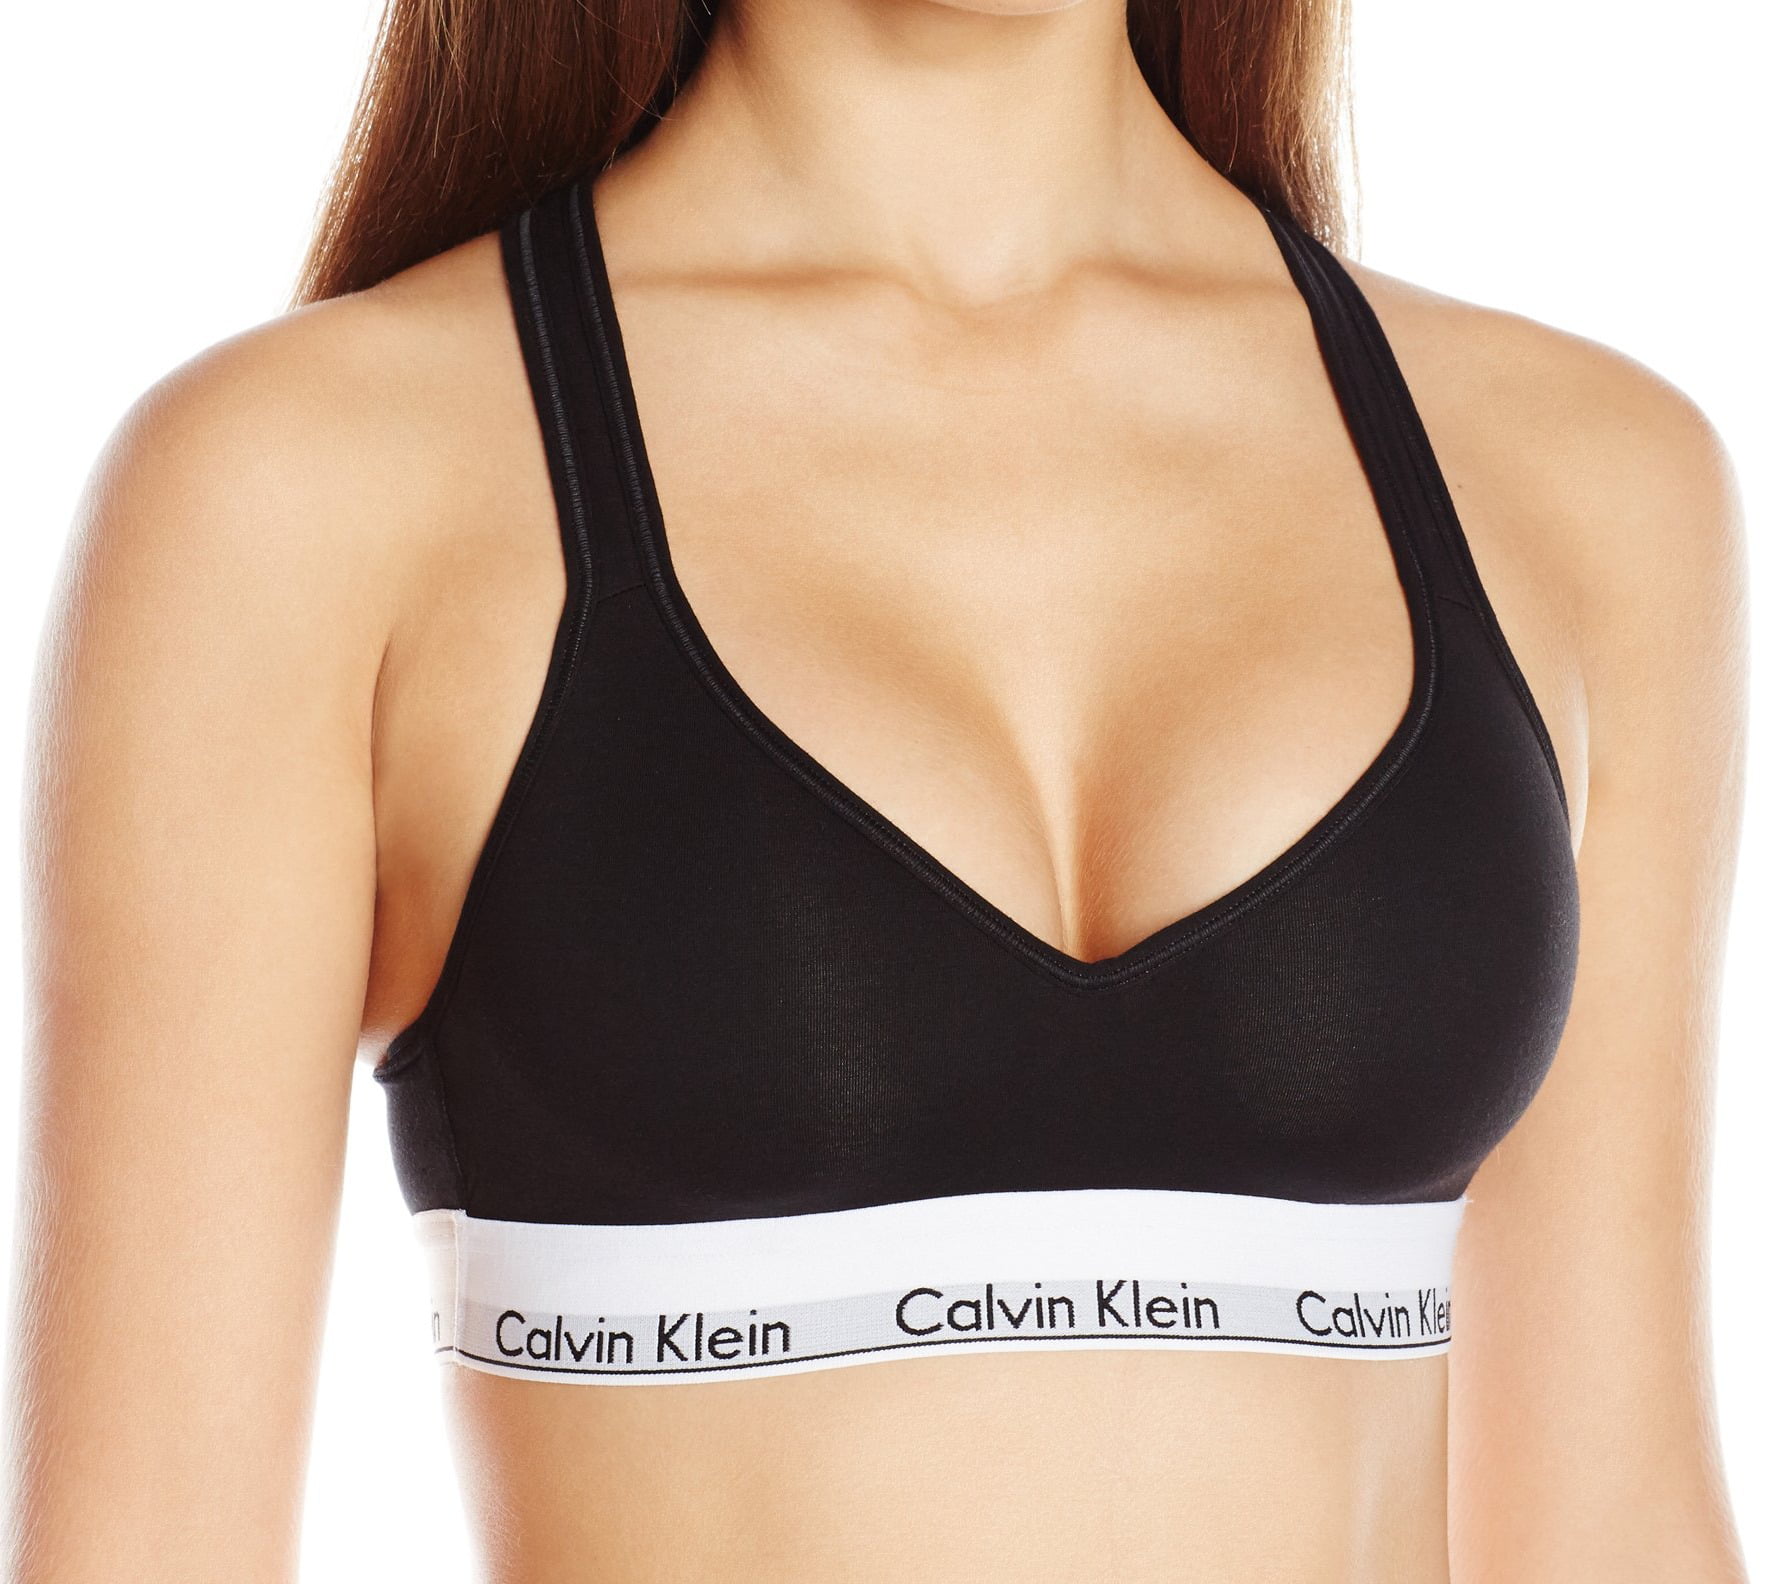 Clan Legende Nuchter Calvin Klein NEW Black Womens Size XS Crossover Lift Bralette Bra -  Walmart.com